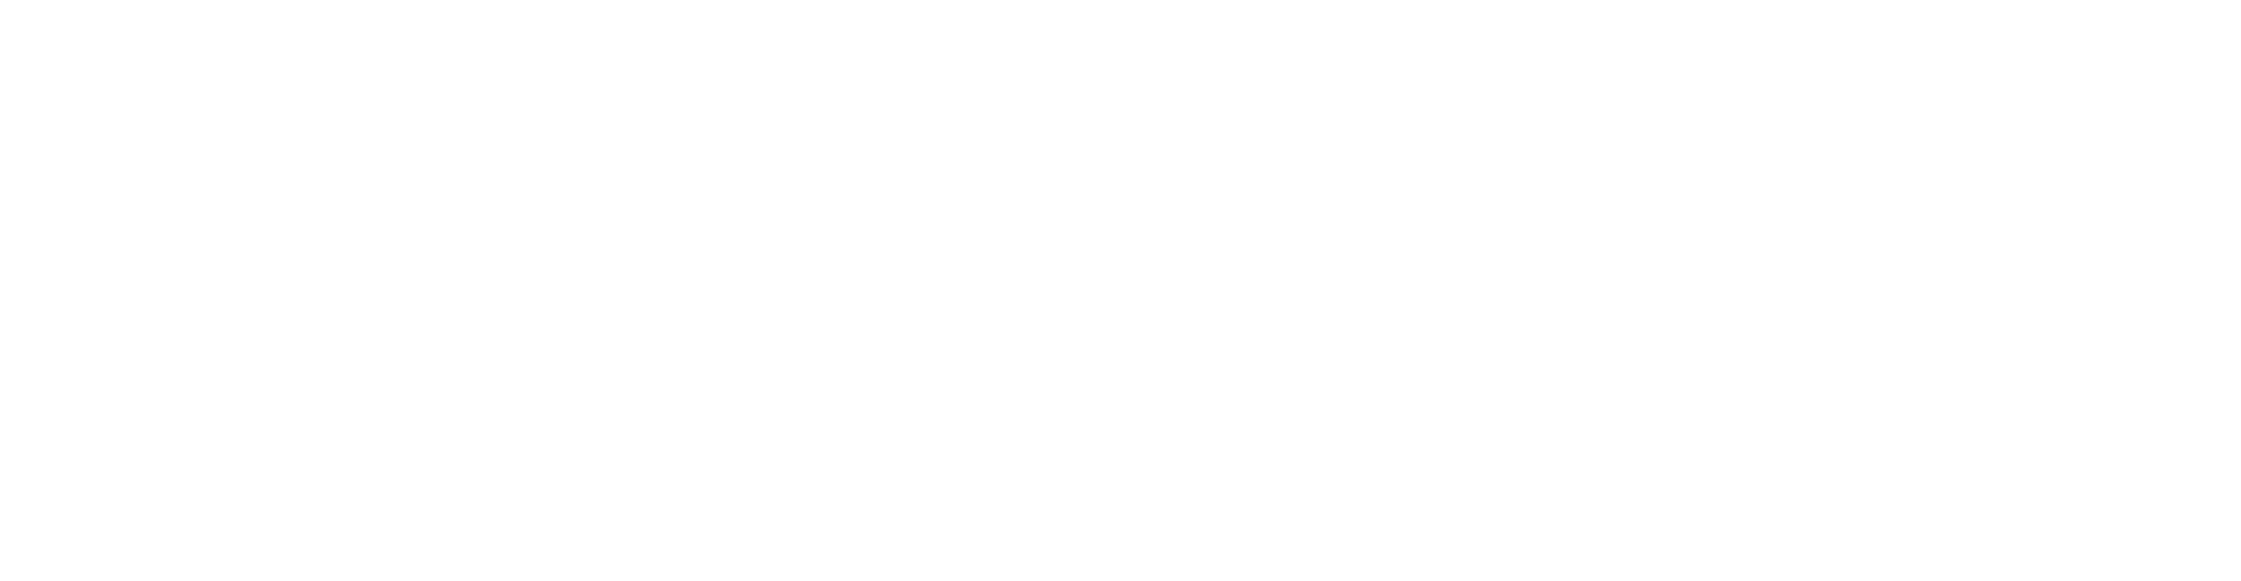 Marina Racewear Racing suits customizer